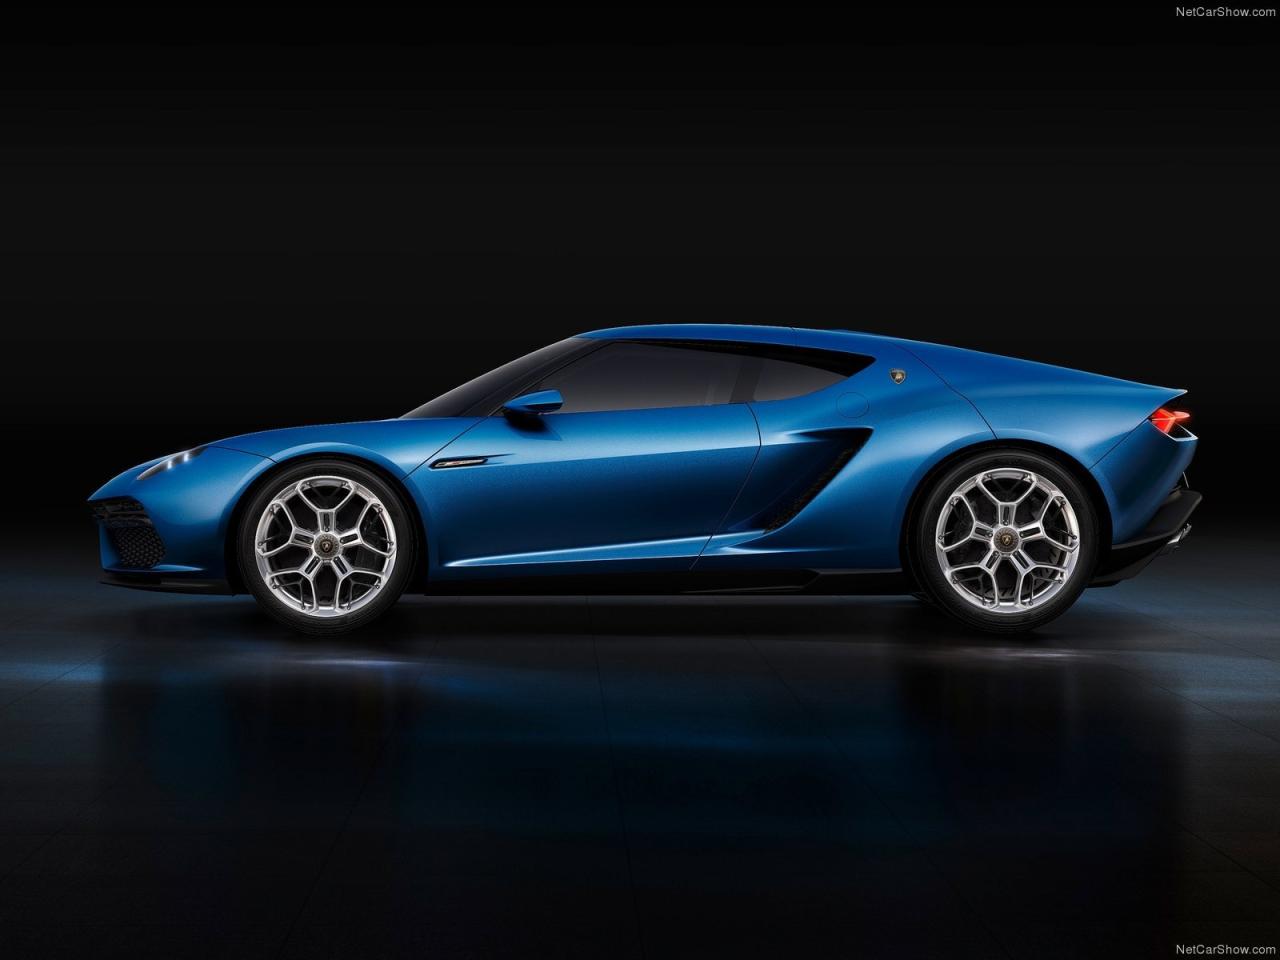 2014 Lamborghini Asterion LPI910 4 Concept